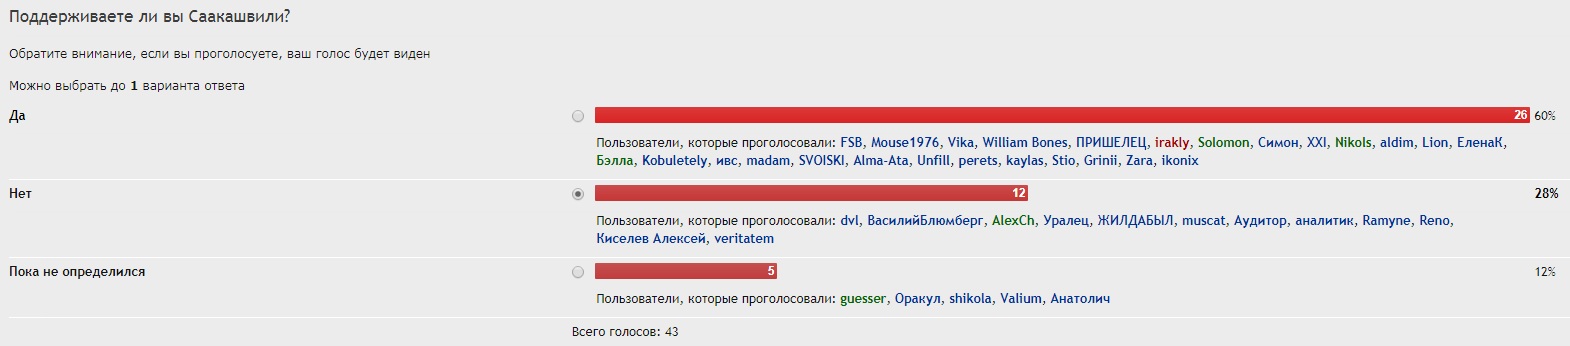 Украинские новости 2017 - Поддержка Саакашвили.jpg